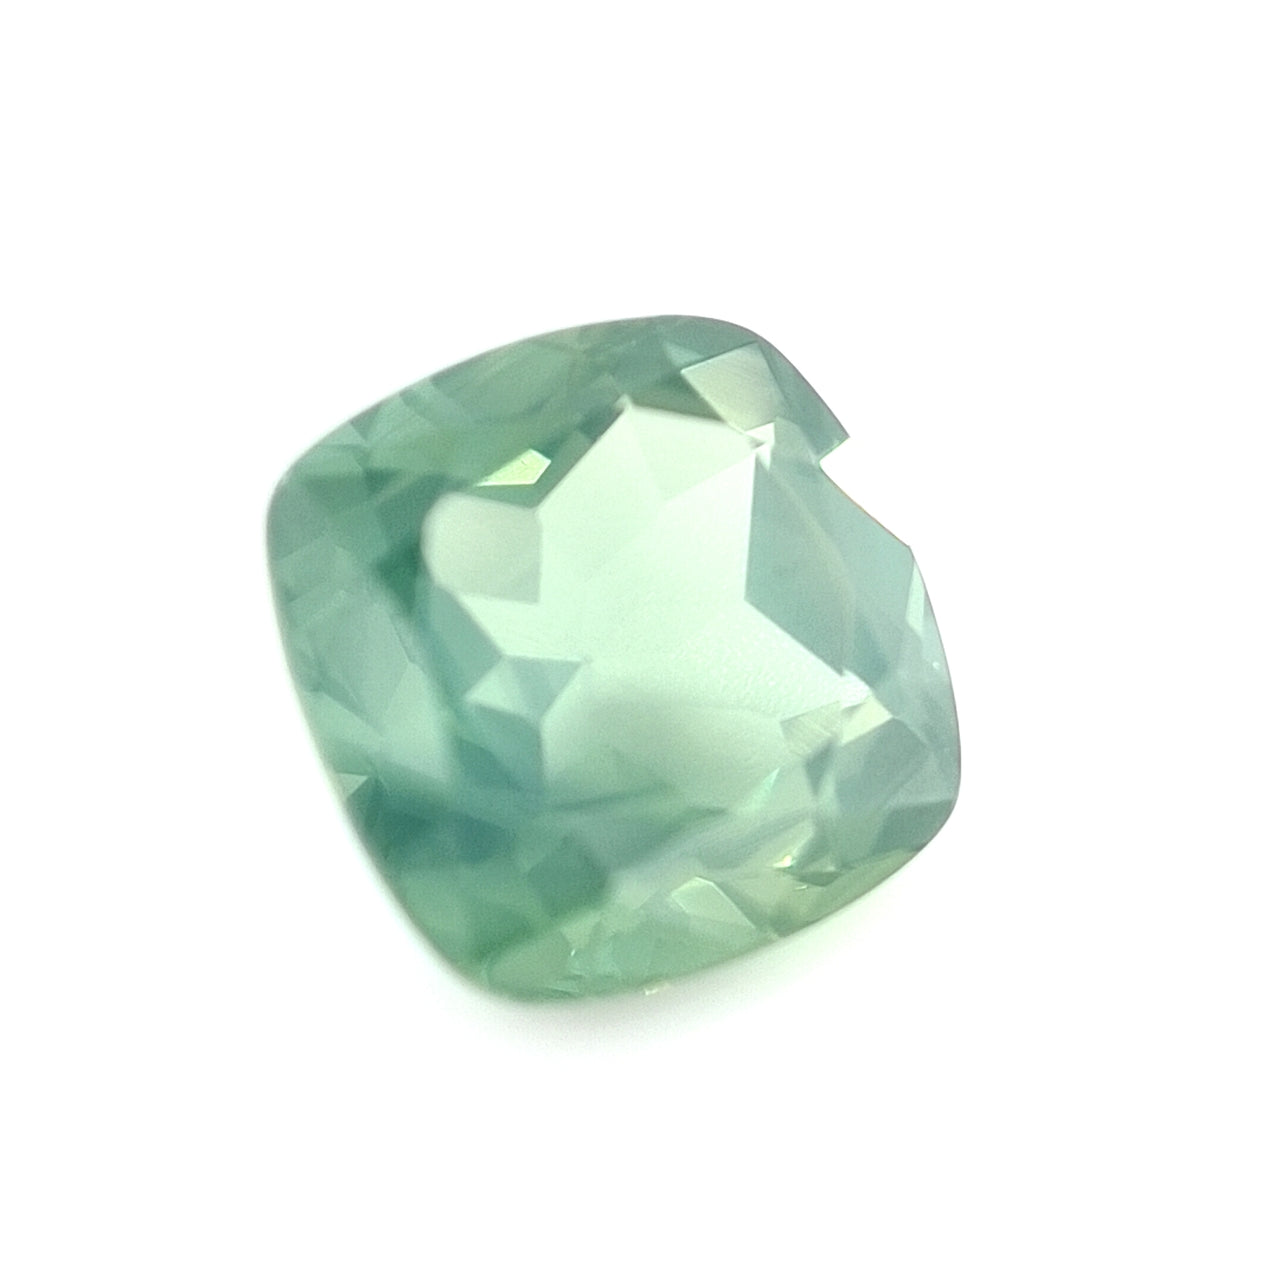 4.23ct Australian Sapphire, Teal Blue, Green - Cushion Cut